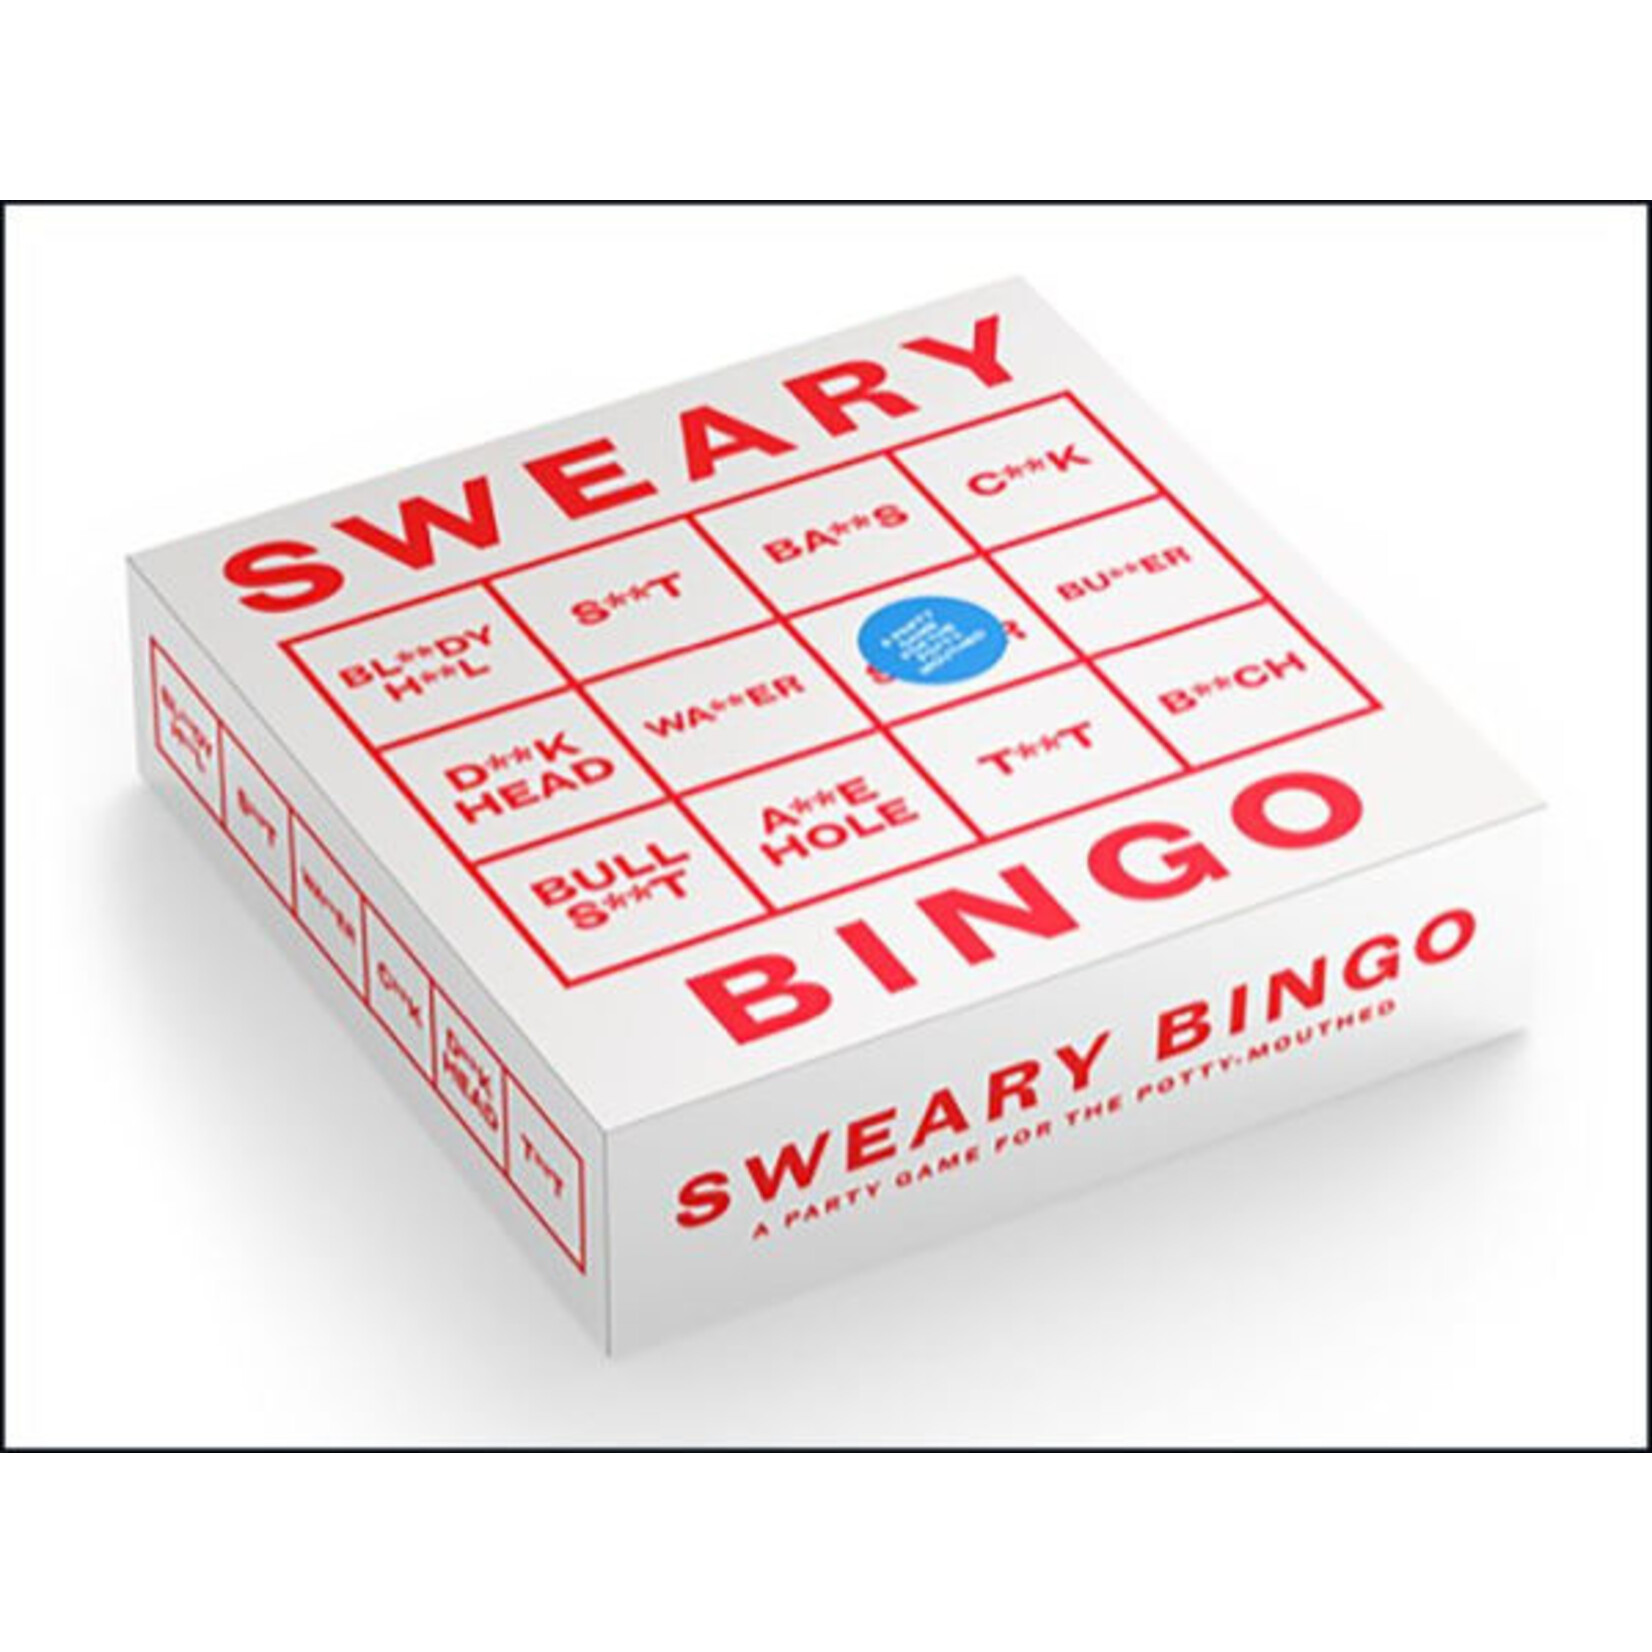 Hachette Book Group Sweary Bingo